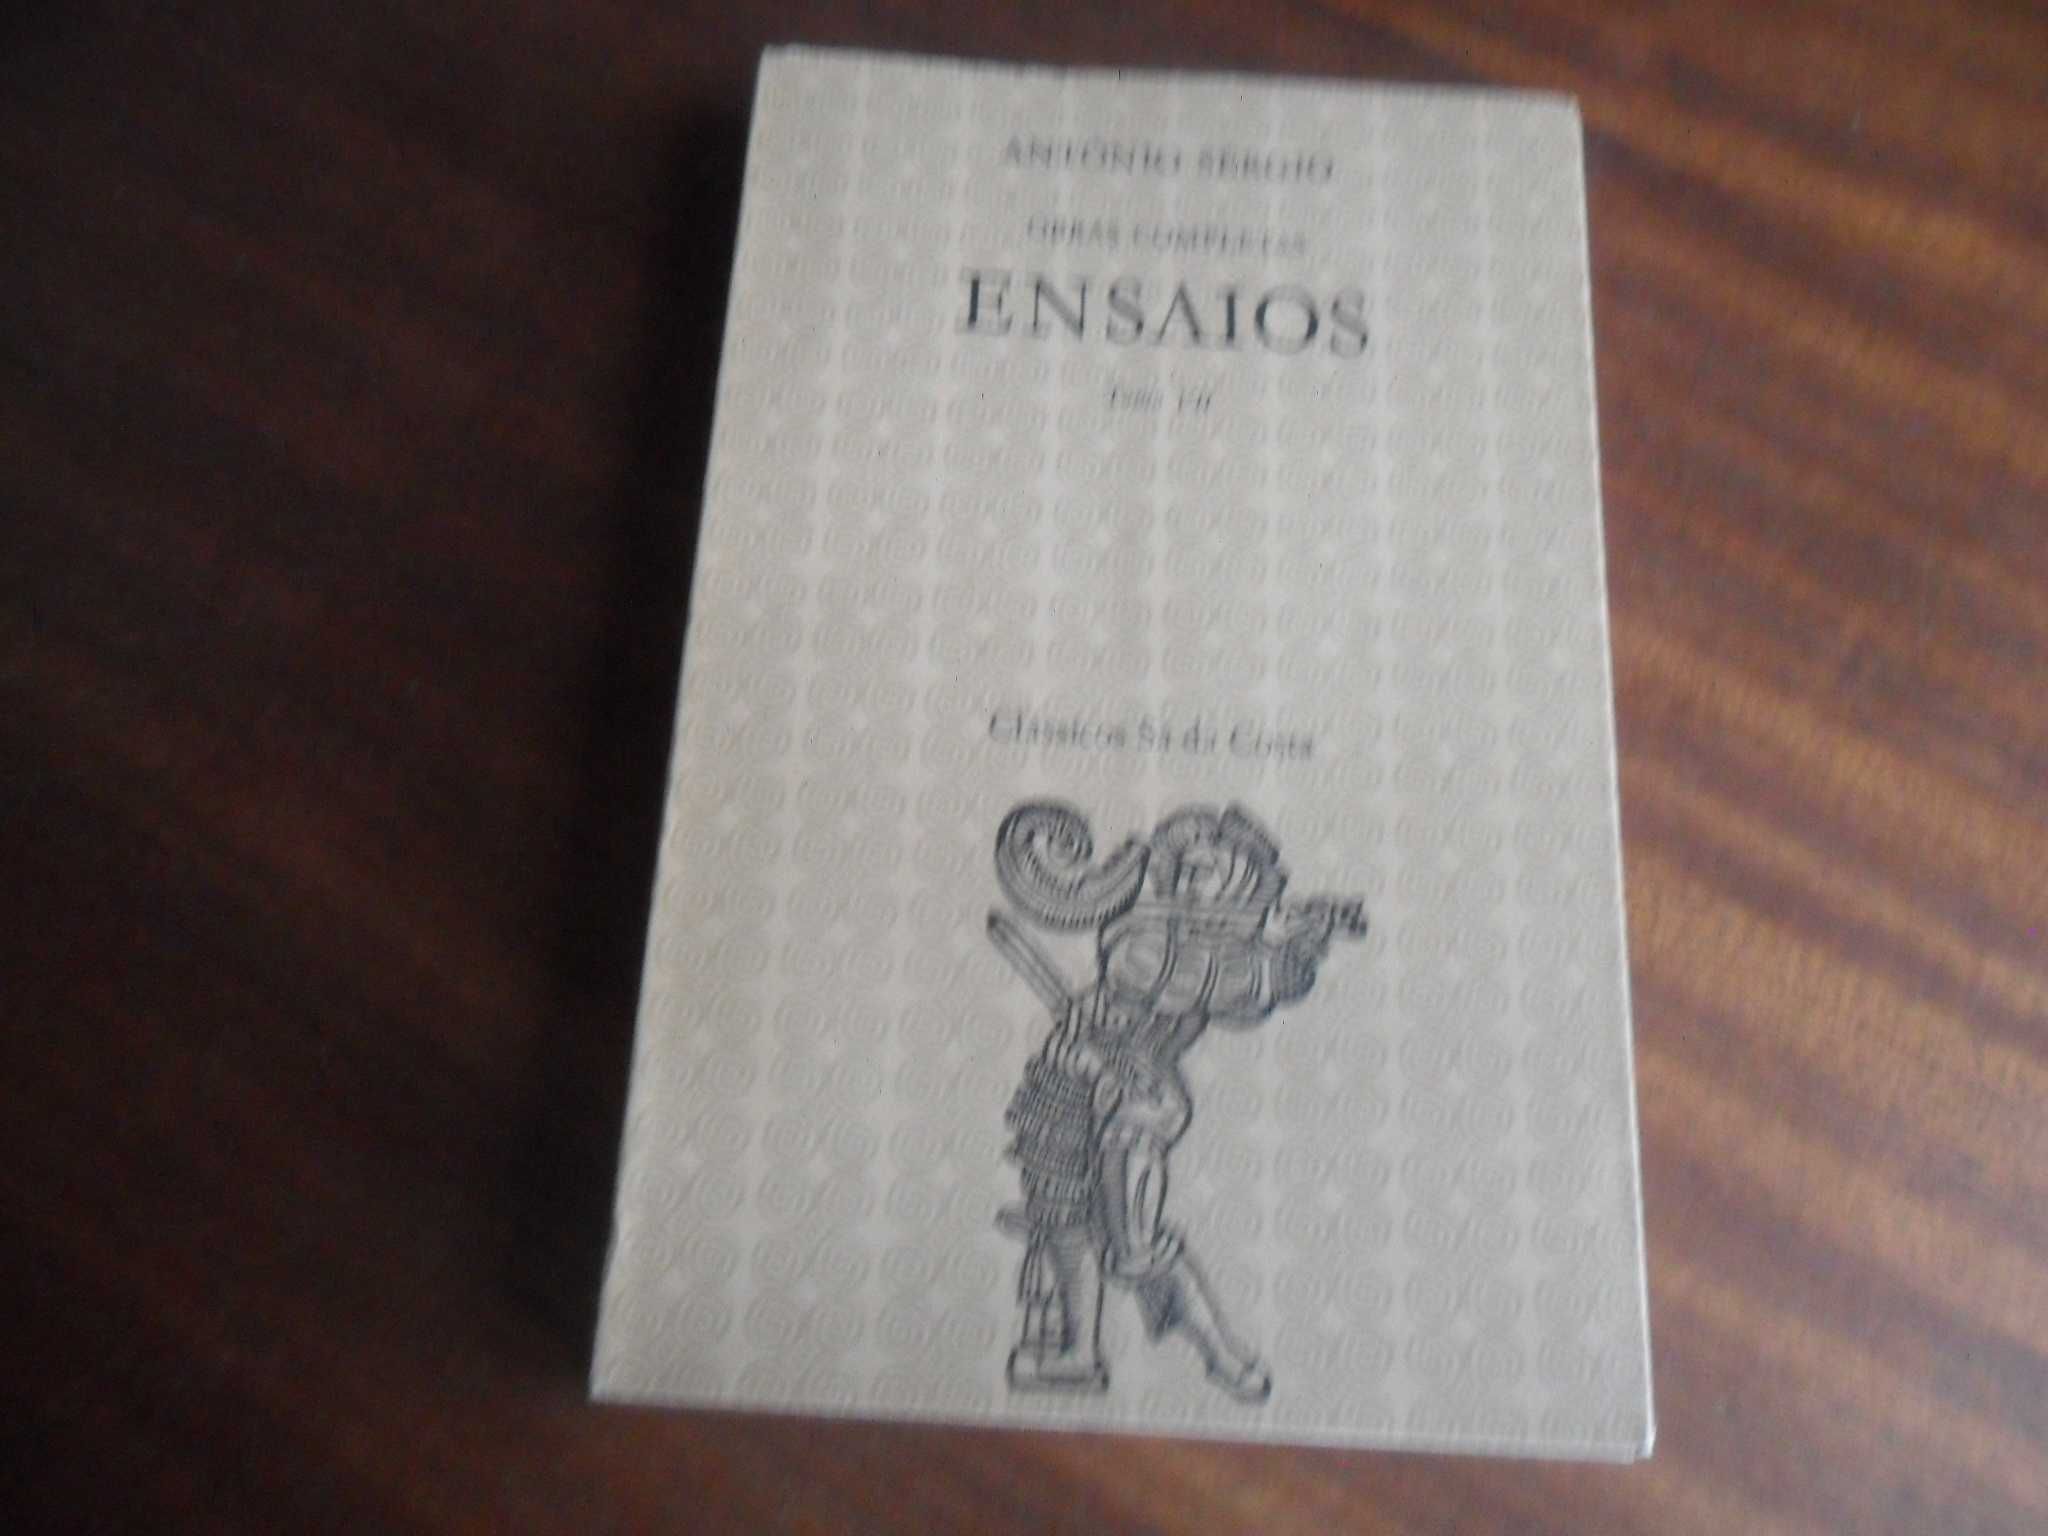 "ENSAIOS" de António Sérgio - Vários Volumes